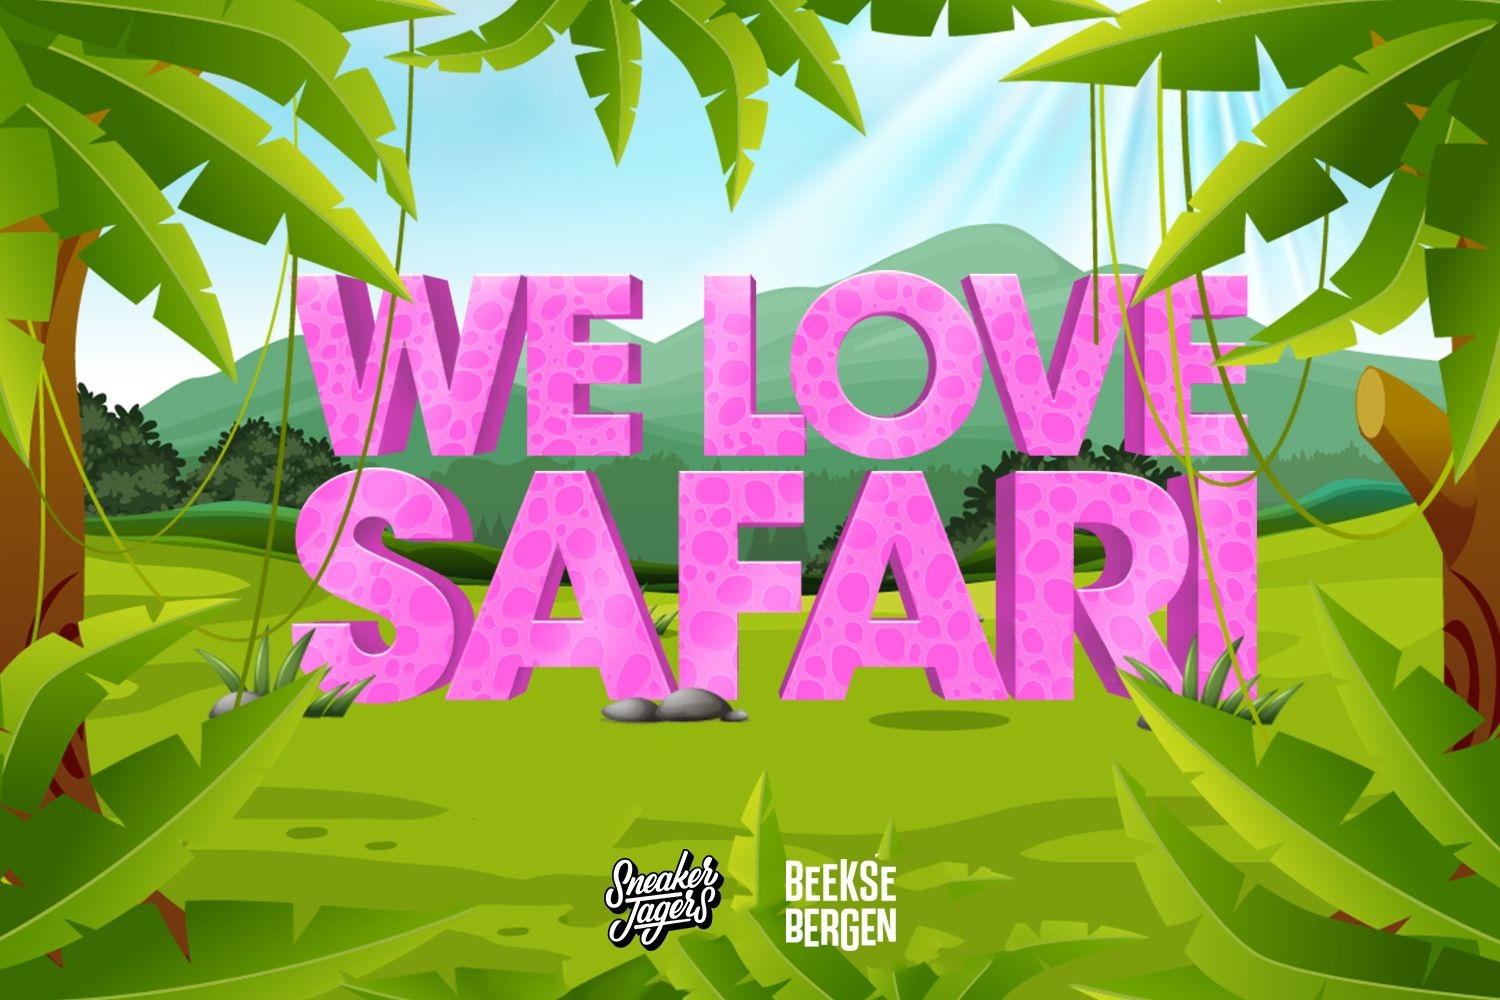 We love Safari - Sneakerjagers präsentiert exklusives Givewaway mit Safaripark Beekse Bergen